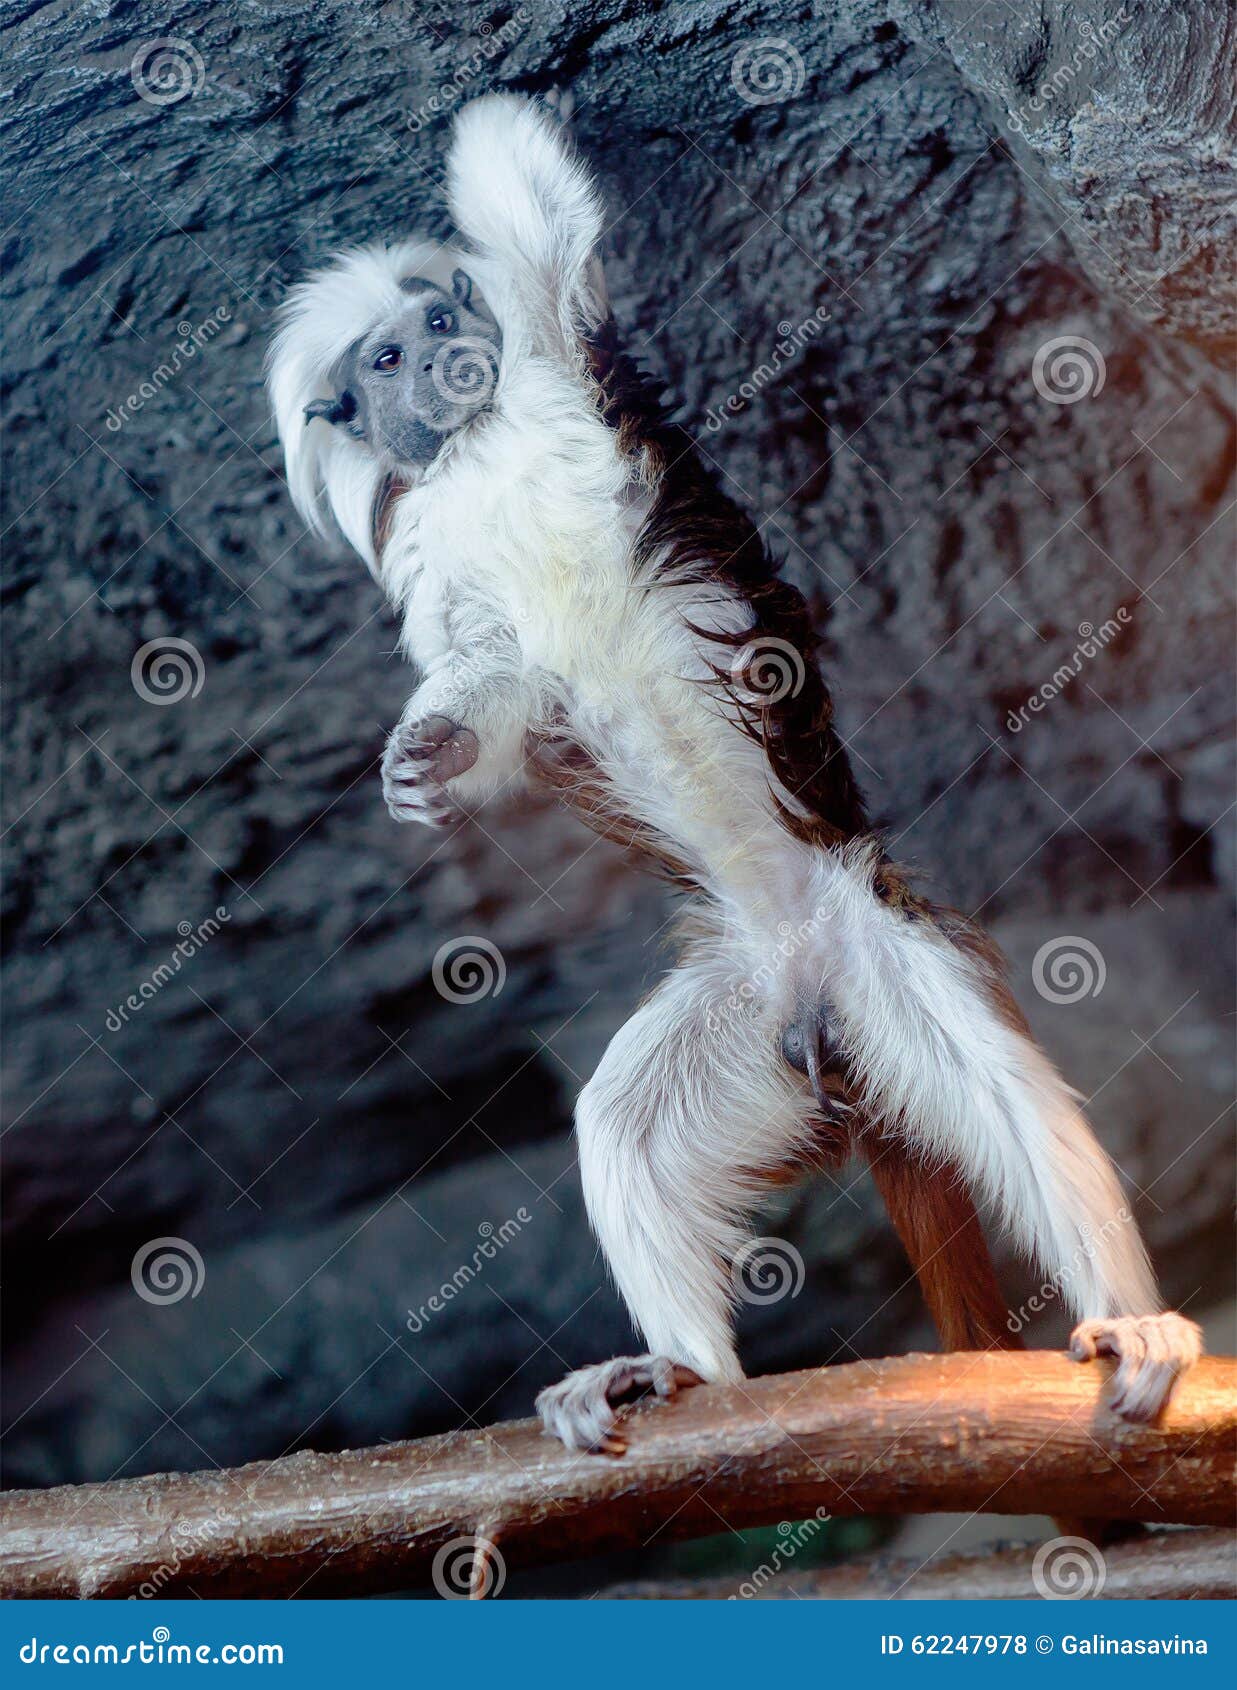 Foto de Macaco Sagui Cabeçadealgodão Saguinus Oedipus e mais fotos